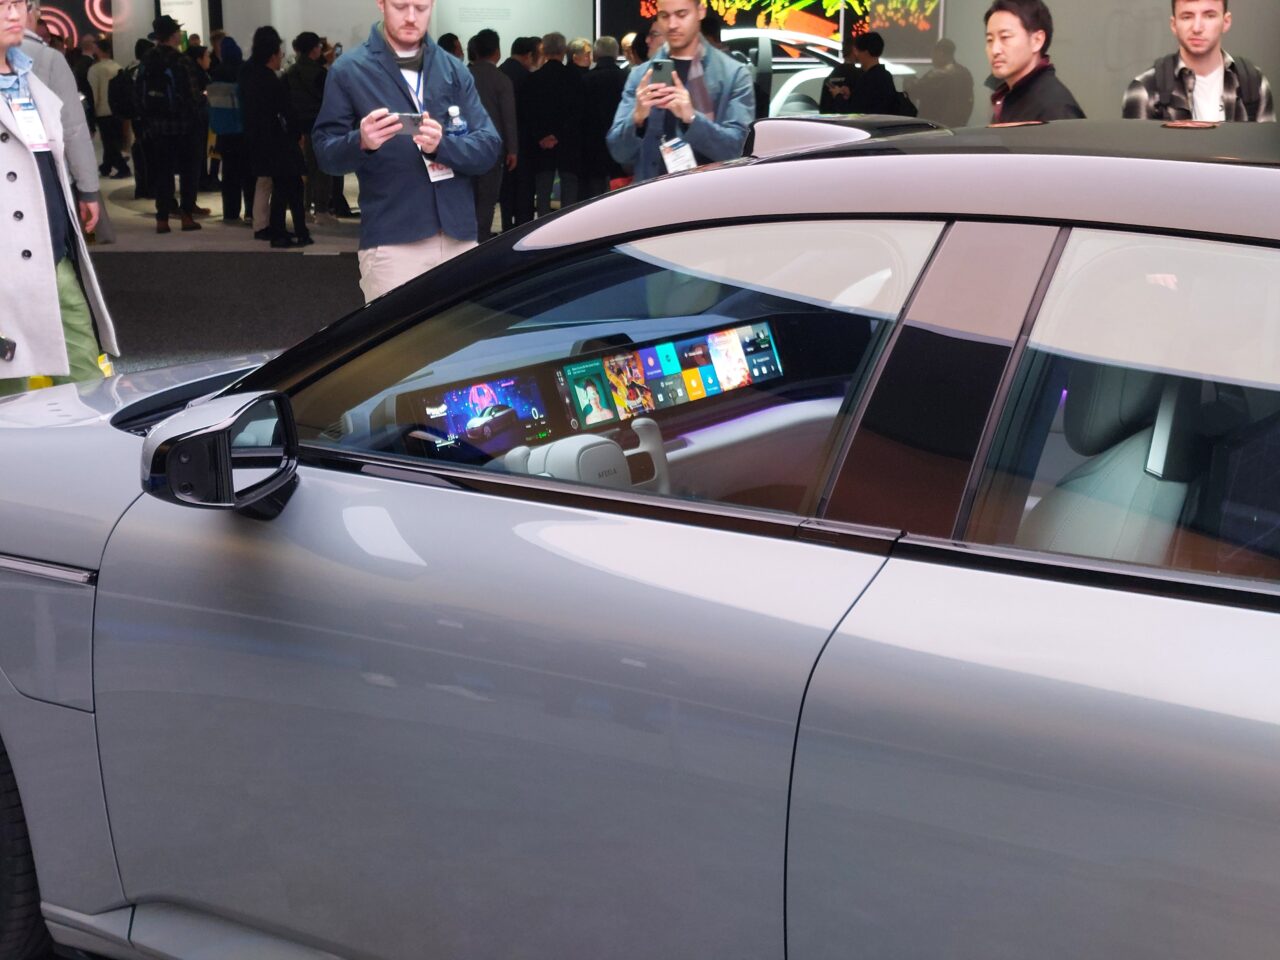 Samochód z zaawansowanym systemem multimedialnym widoczny przez boczną szybę, na tle ludzi na wystawie technologicznej.